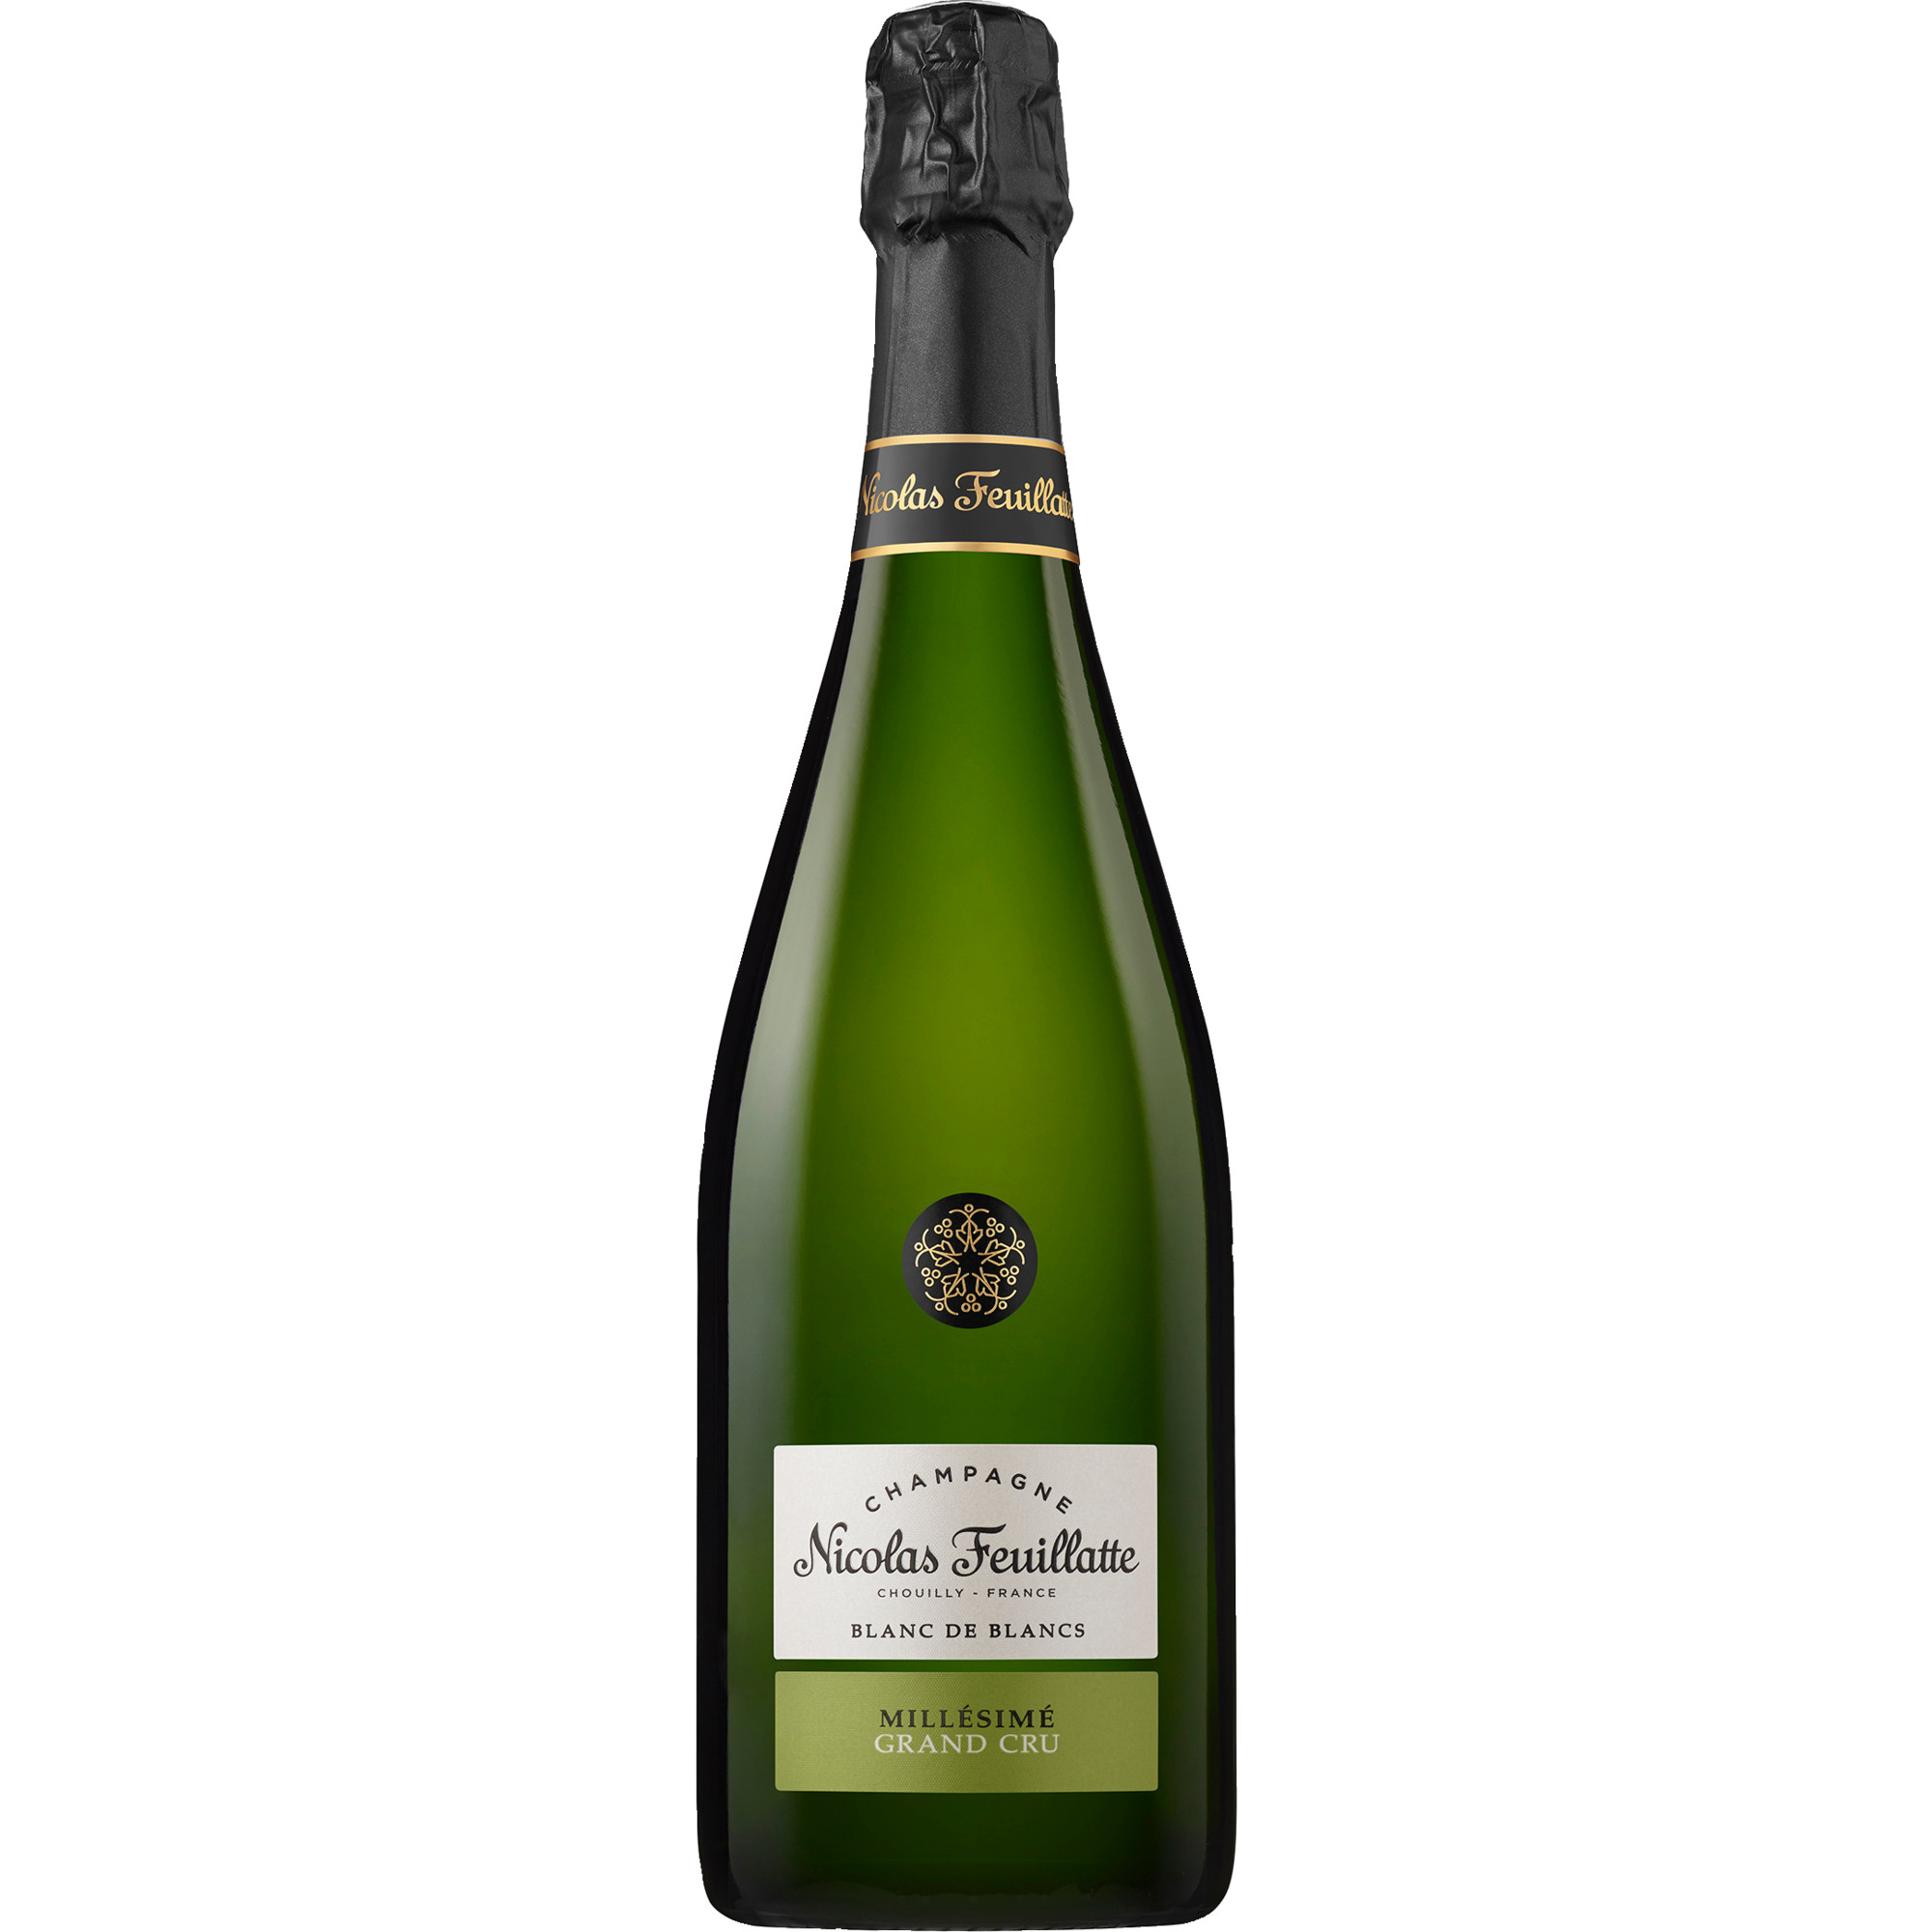 2011 Champagne Nicolas Feuillatte Grand Cru